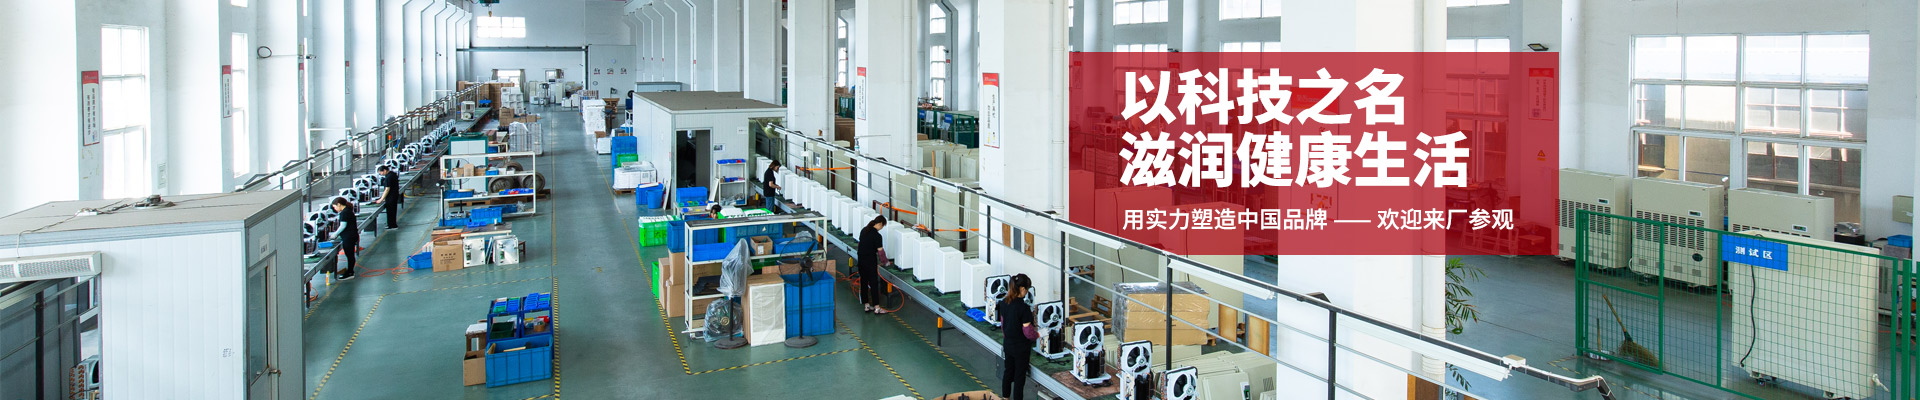 丝瓜app下载安装，用實力塑造中國品牌